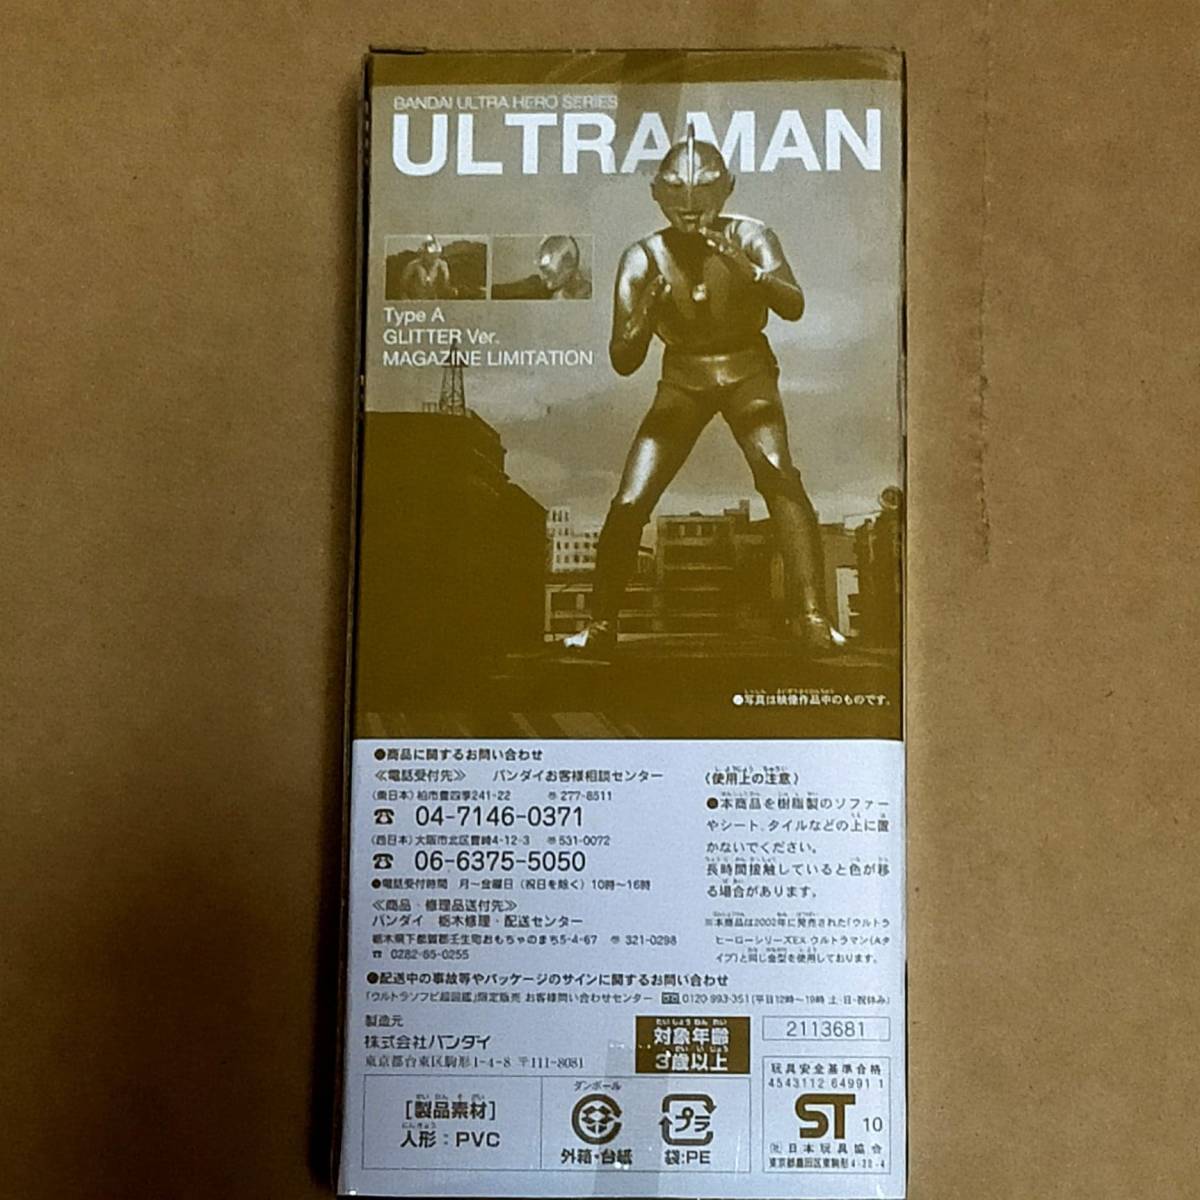 ウルトラソフビ超図鑑 限定 ウルトラマン Aタイプ グリッターver ソフビ 古谷敏 サイン Bin Furuya autograph Ultraman glitter Figure